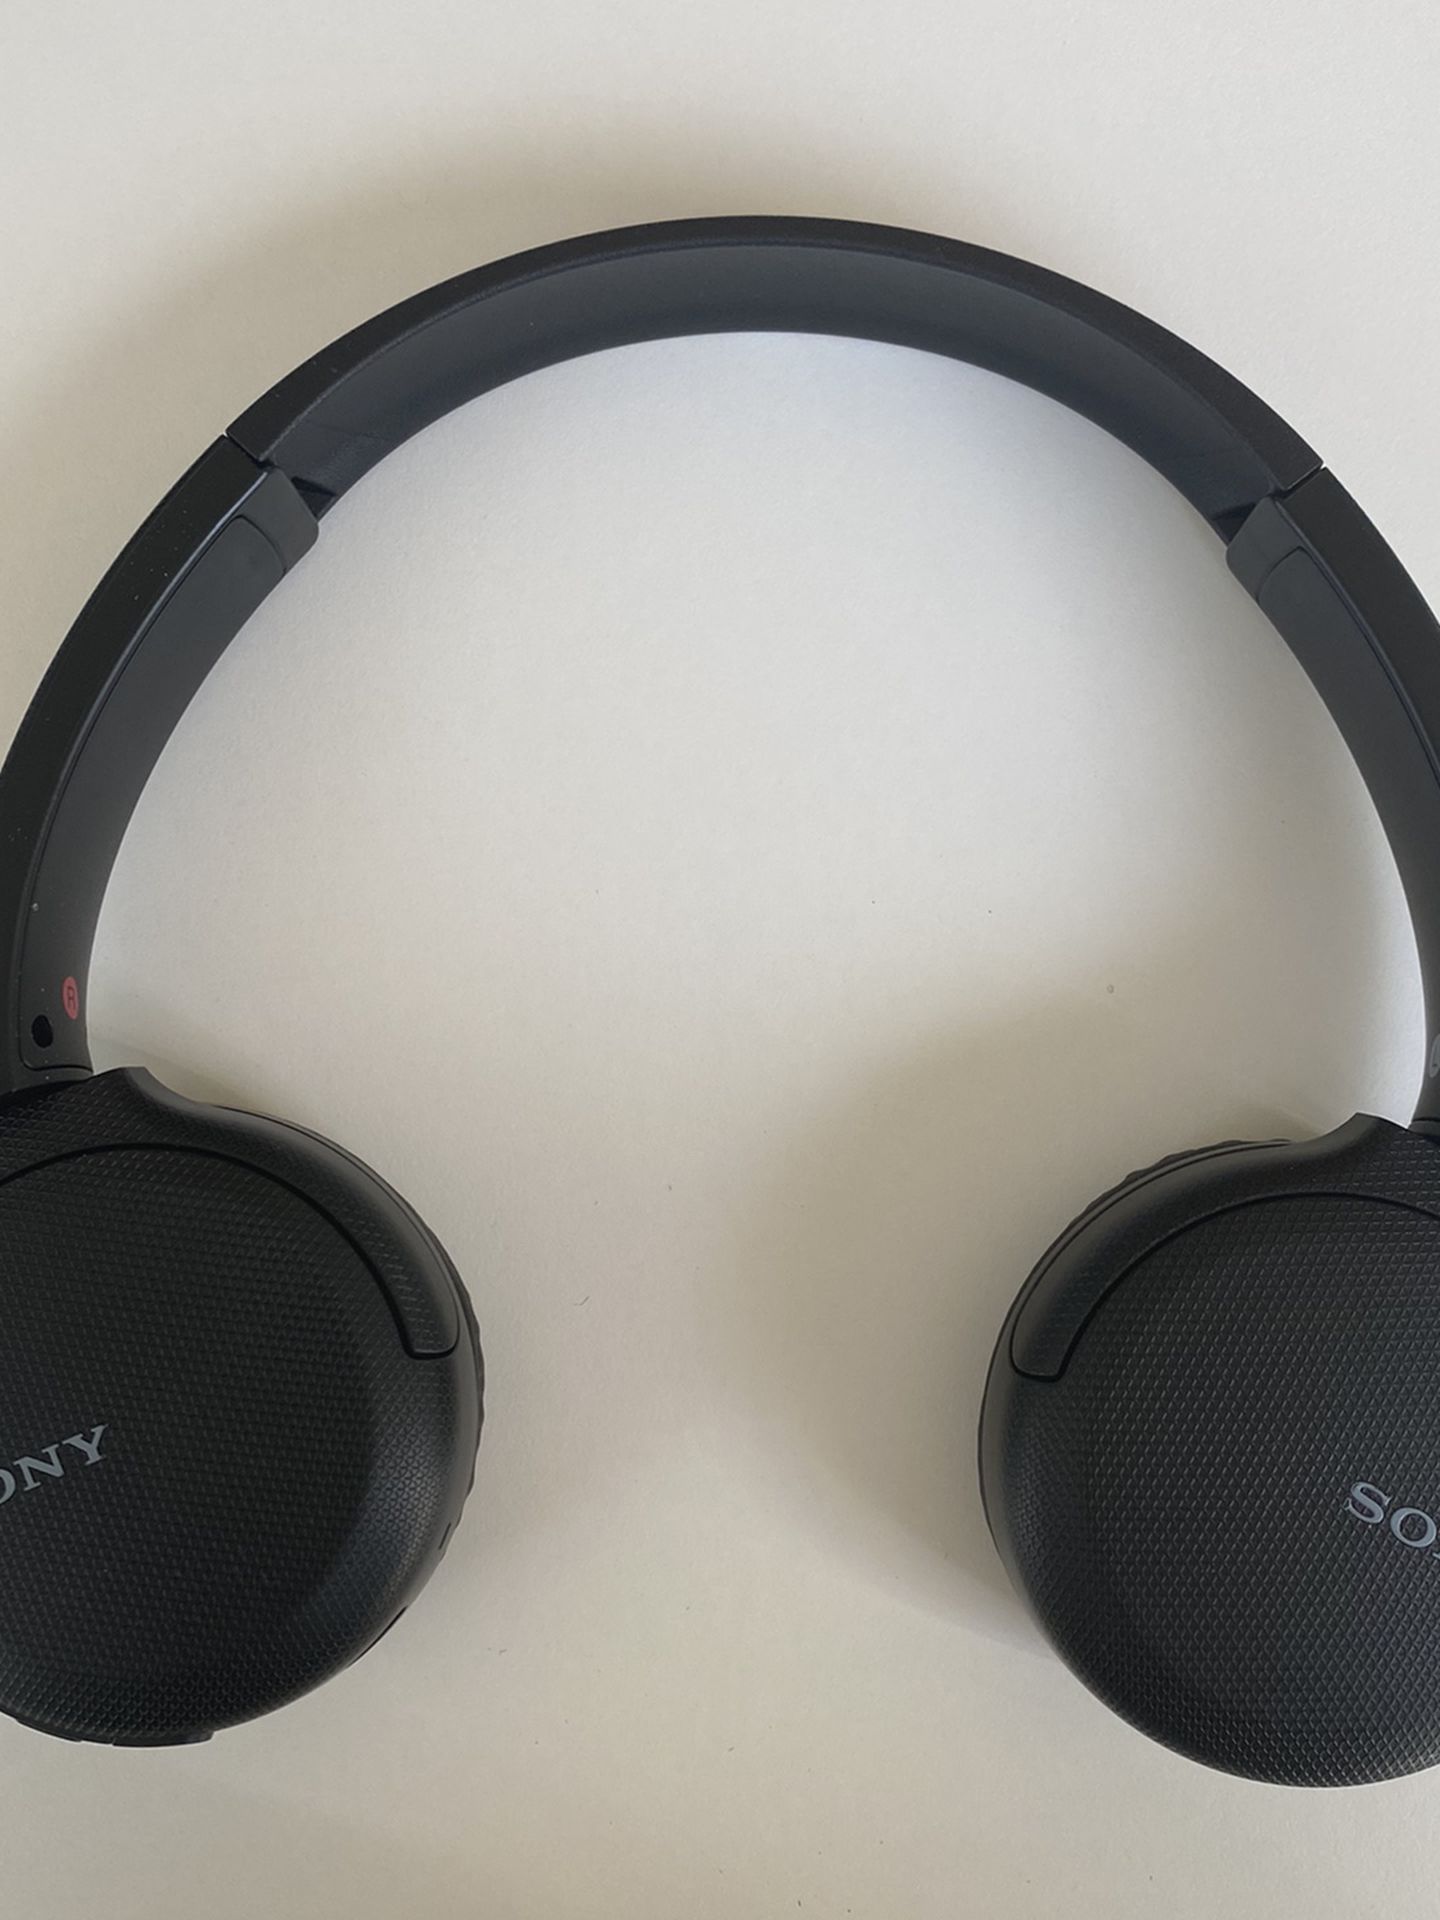 Sony WH-CH510 Wireless On-Ear Headphones